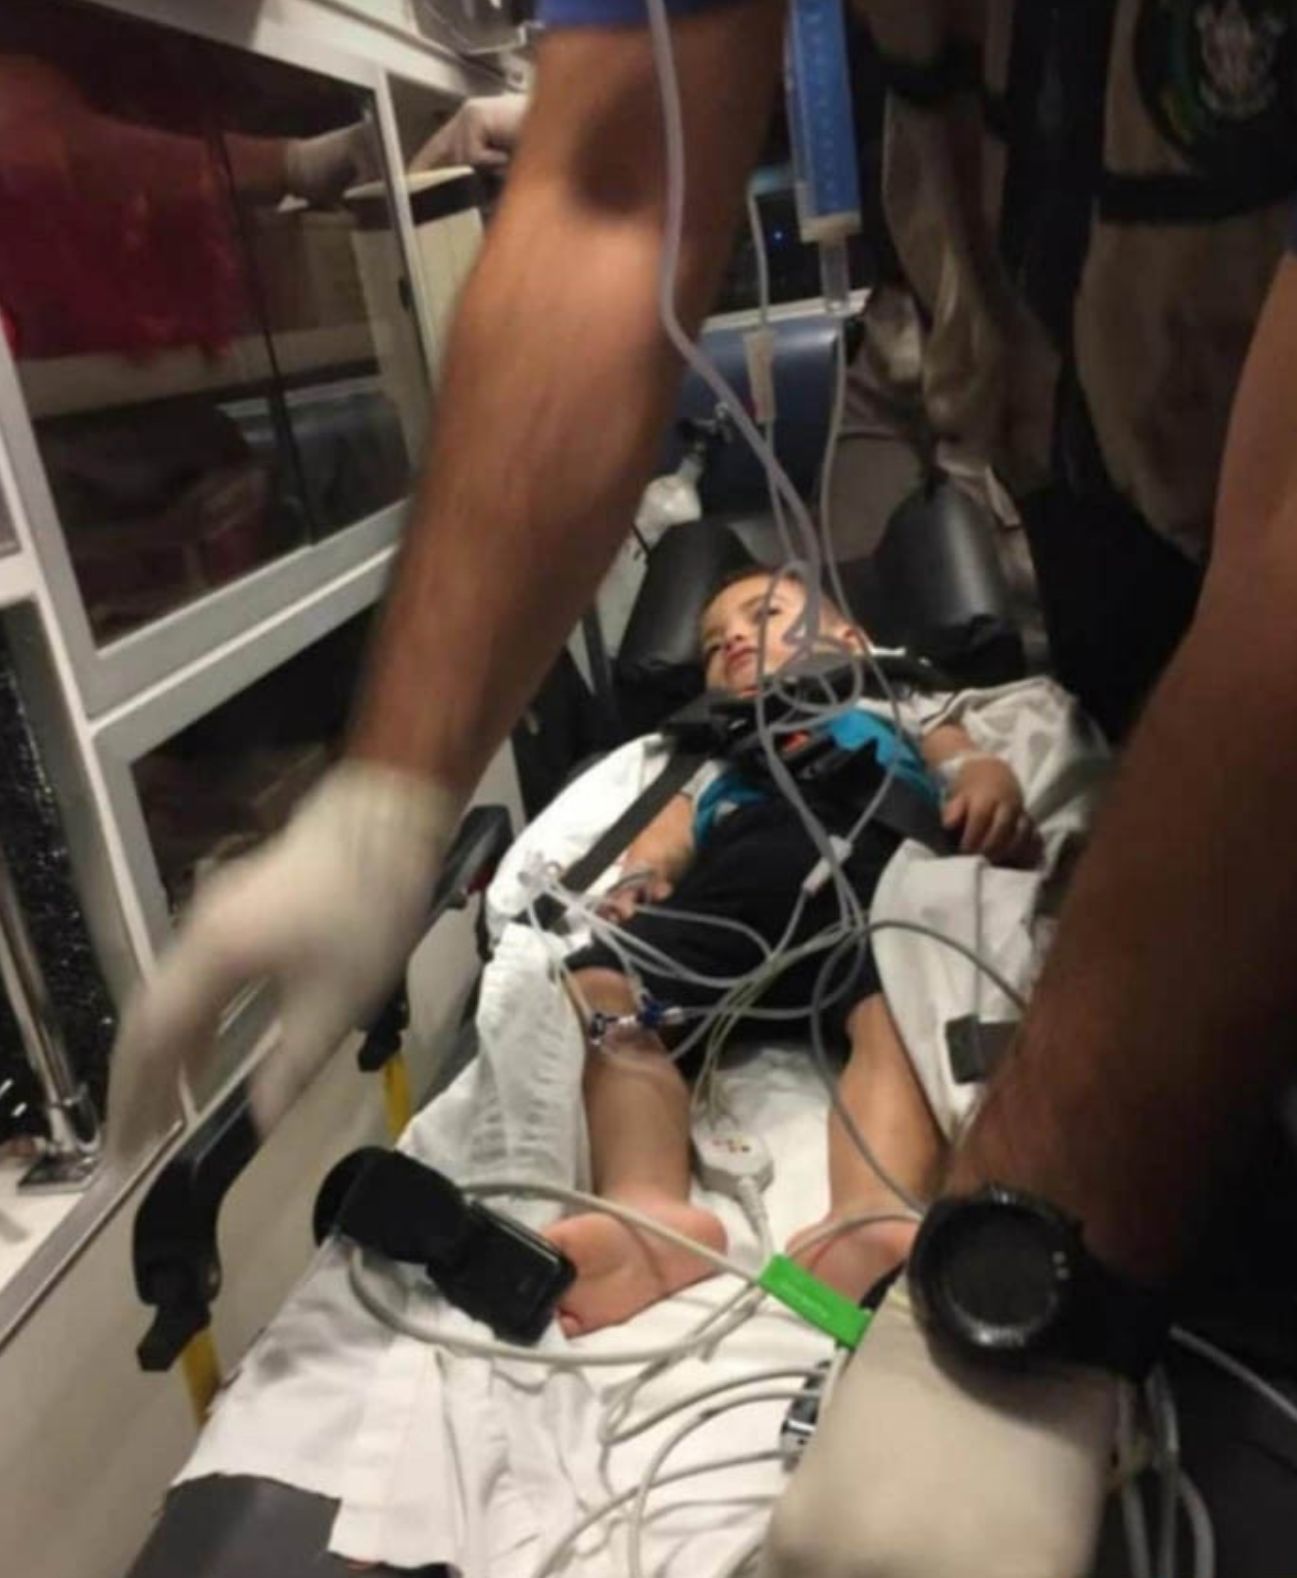 الطفل 'حسين' اصيب بكسور في رأسه جراء سقوطه عن الطابق الأول... وهو الآن بحاجة ماسة لدعائكم